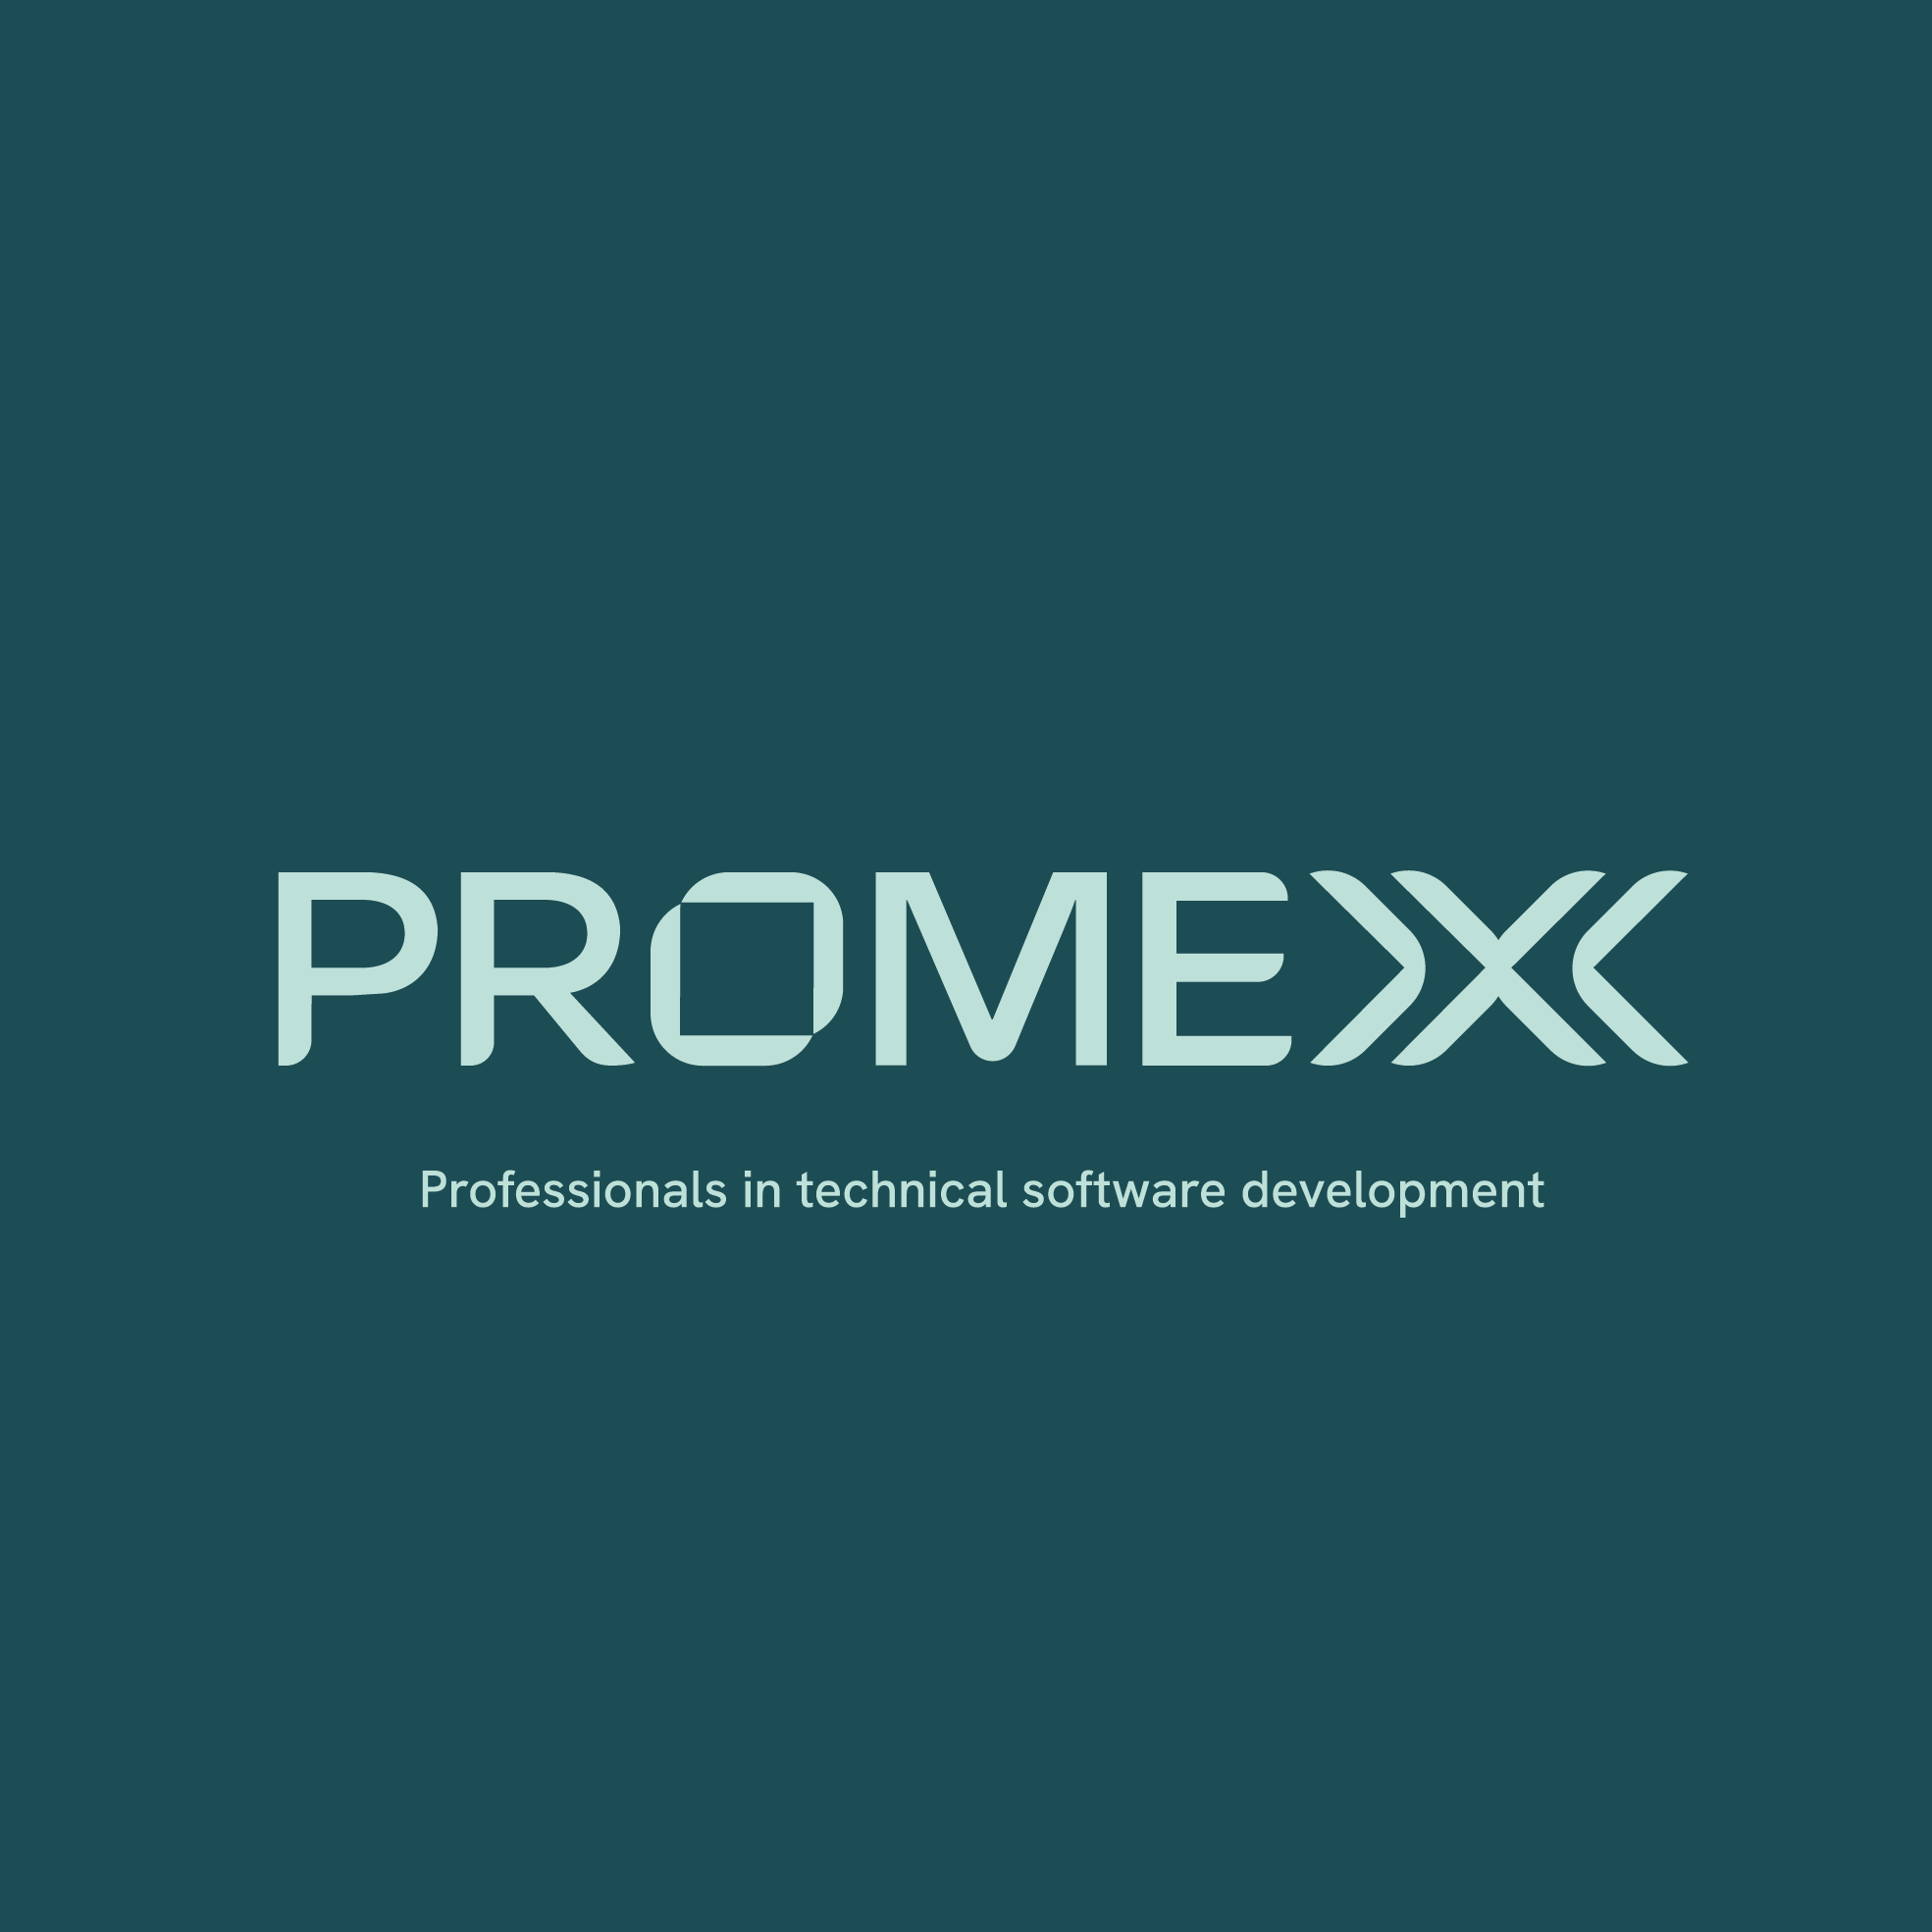 PROMEXX logo